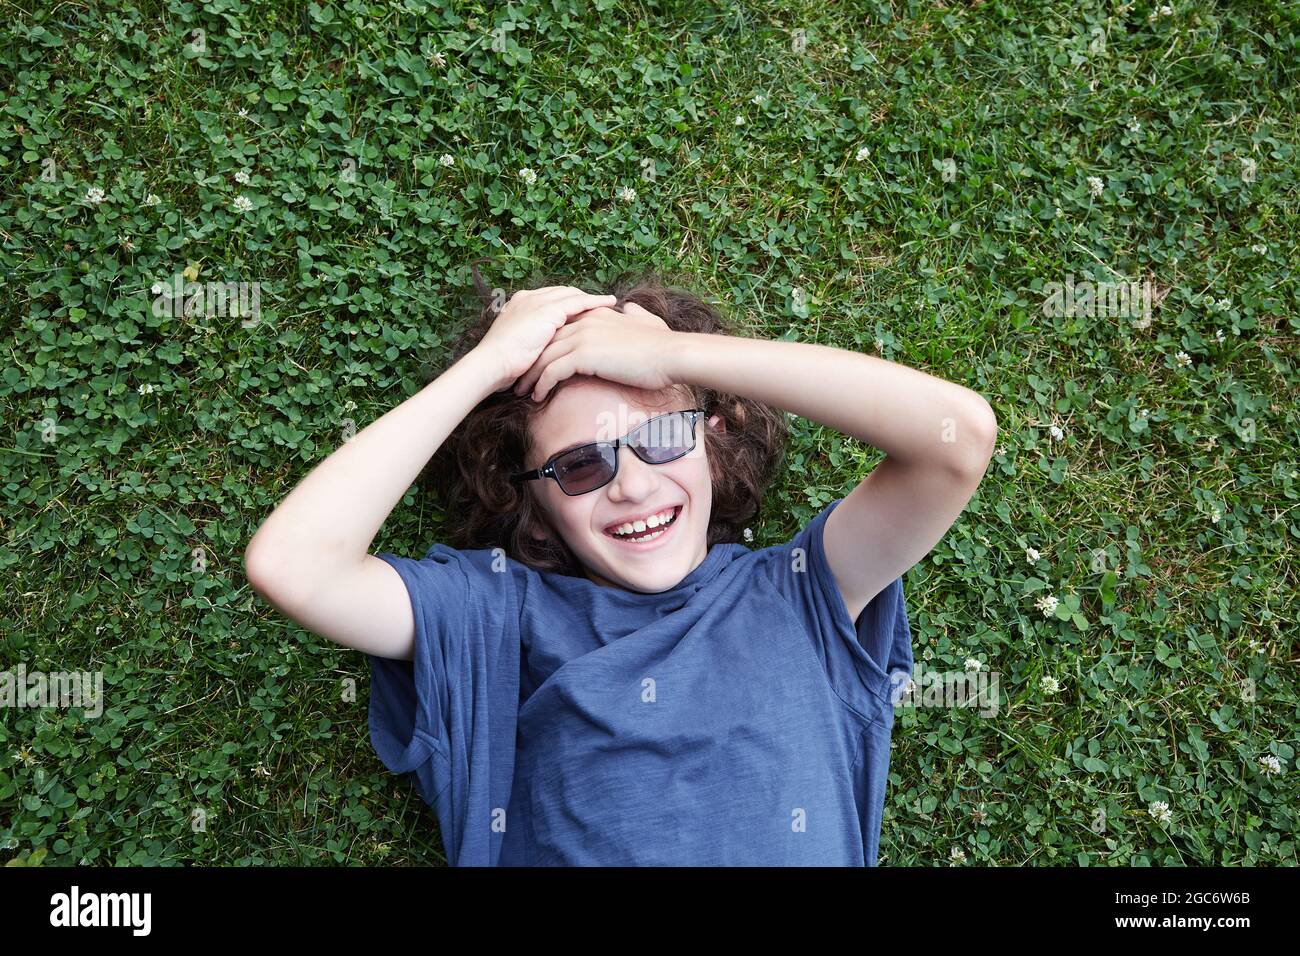 Junge im Gras liegend und lachend Stockfoto